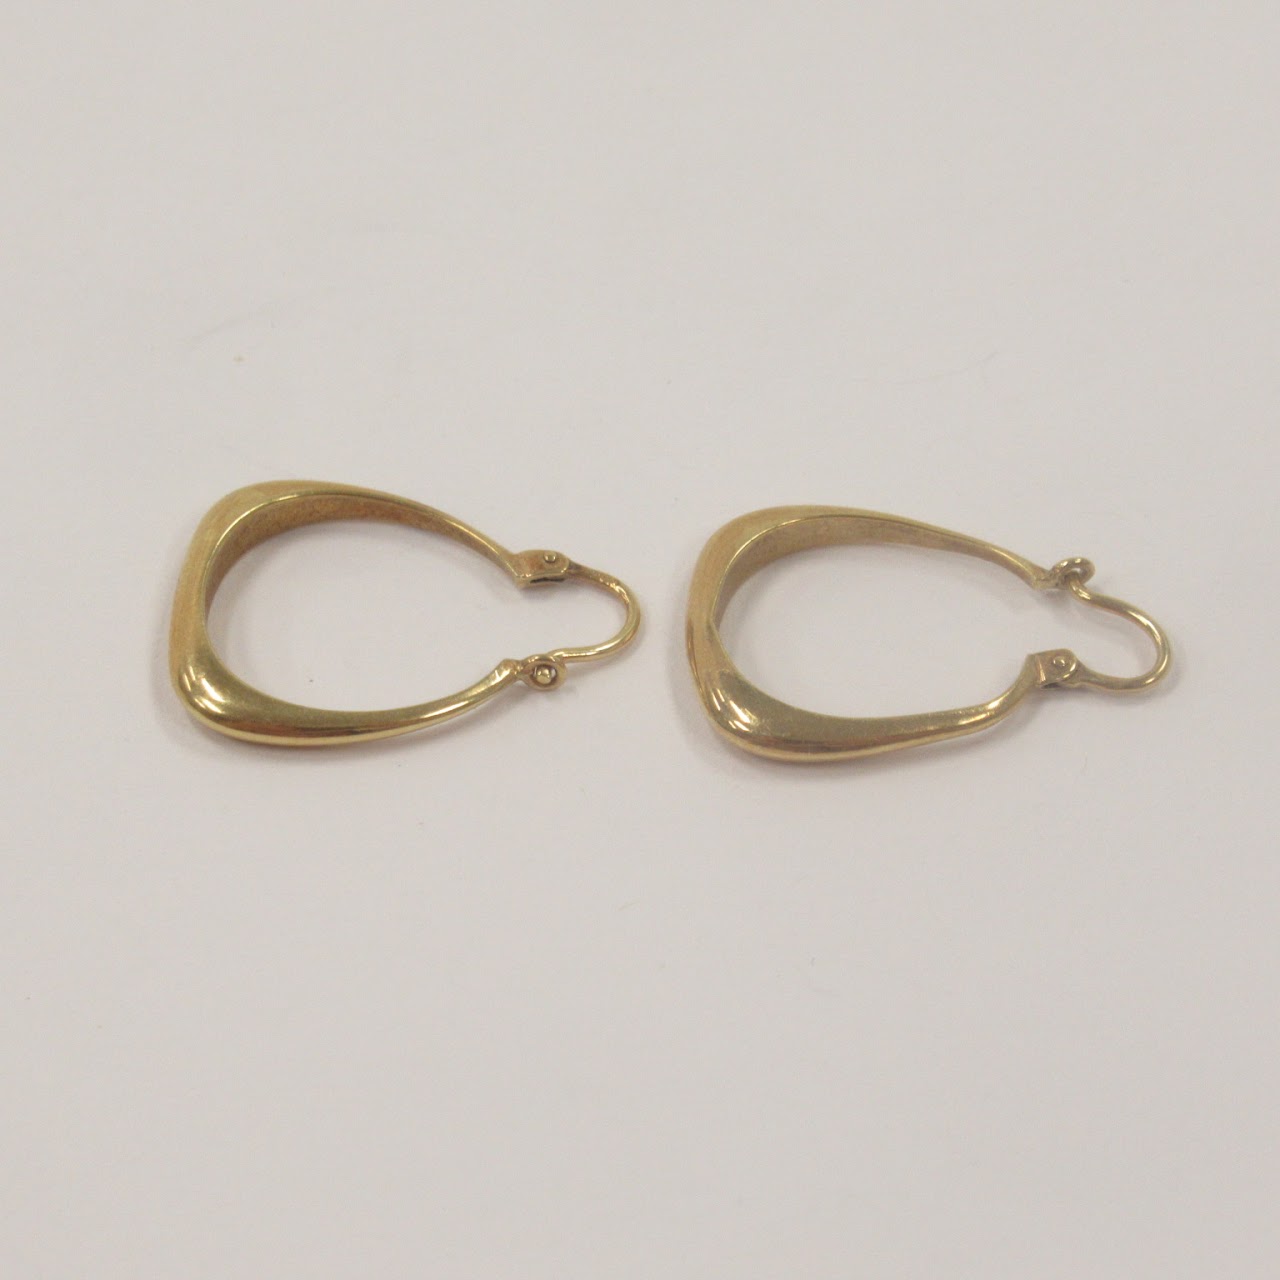 14K Gold Square Hoop Earrings